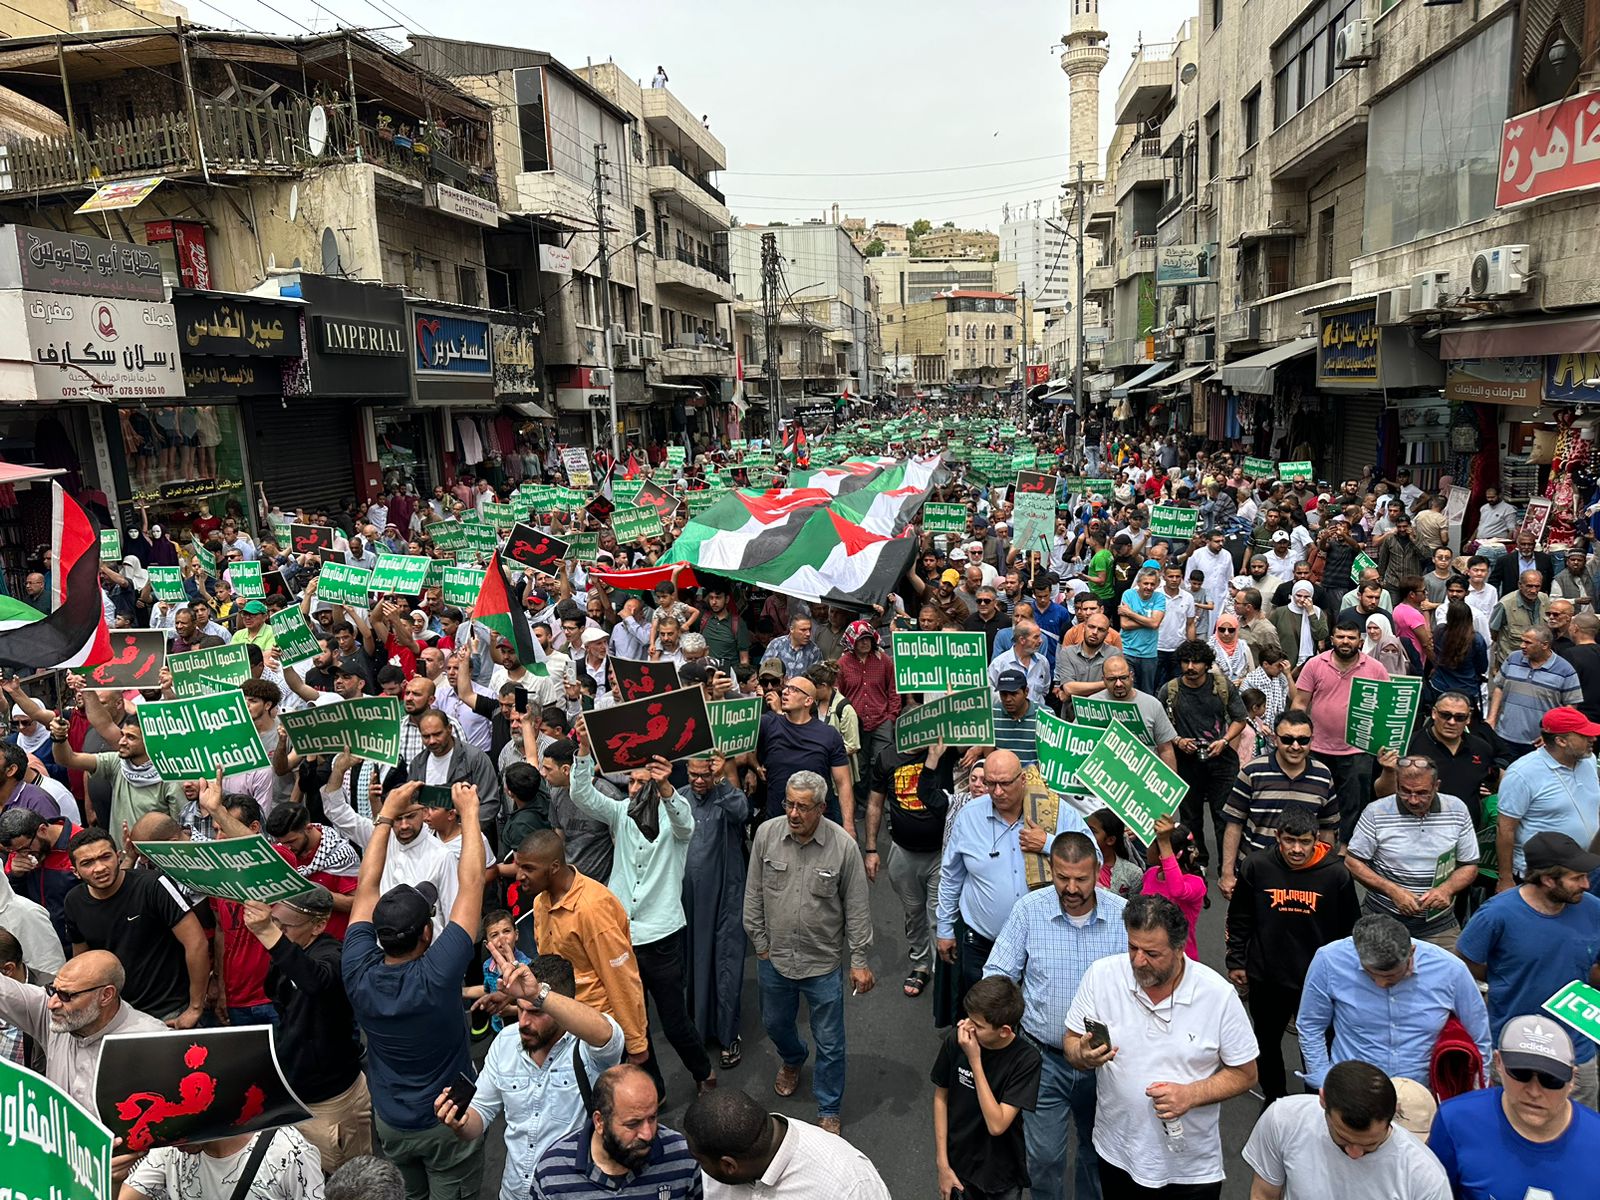 آلاف الاردنيين في وسط البلد: رفح مدينة أشباح.. يا اللي ناوي ع اجتياح - فيديو وصور